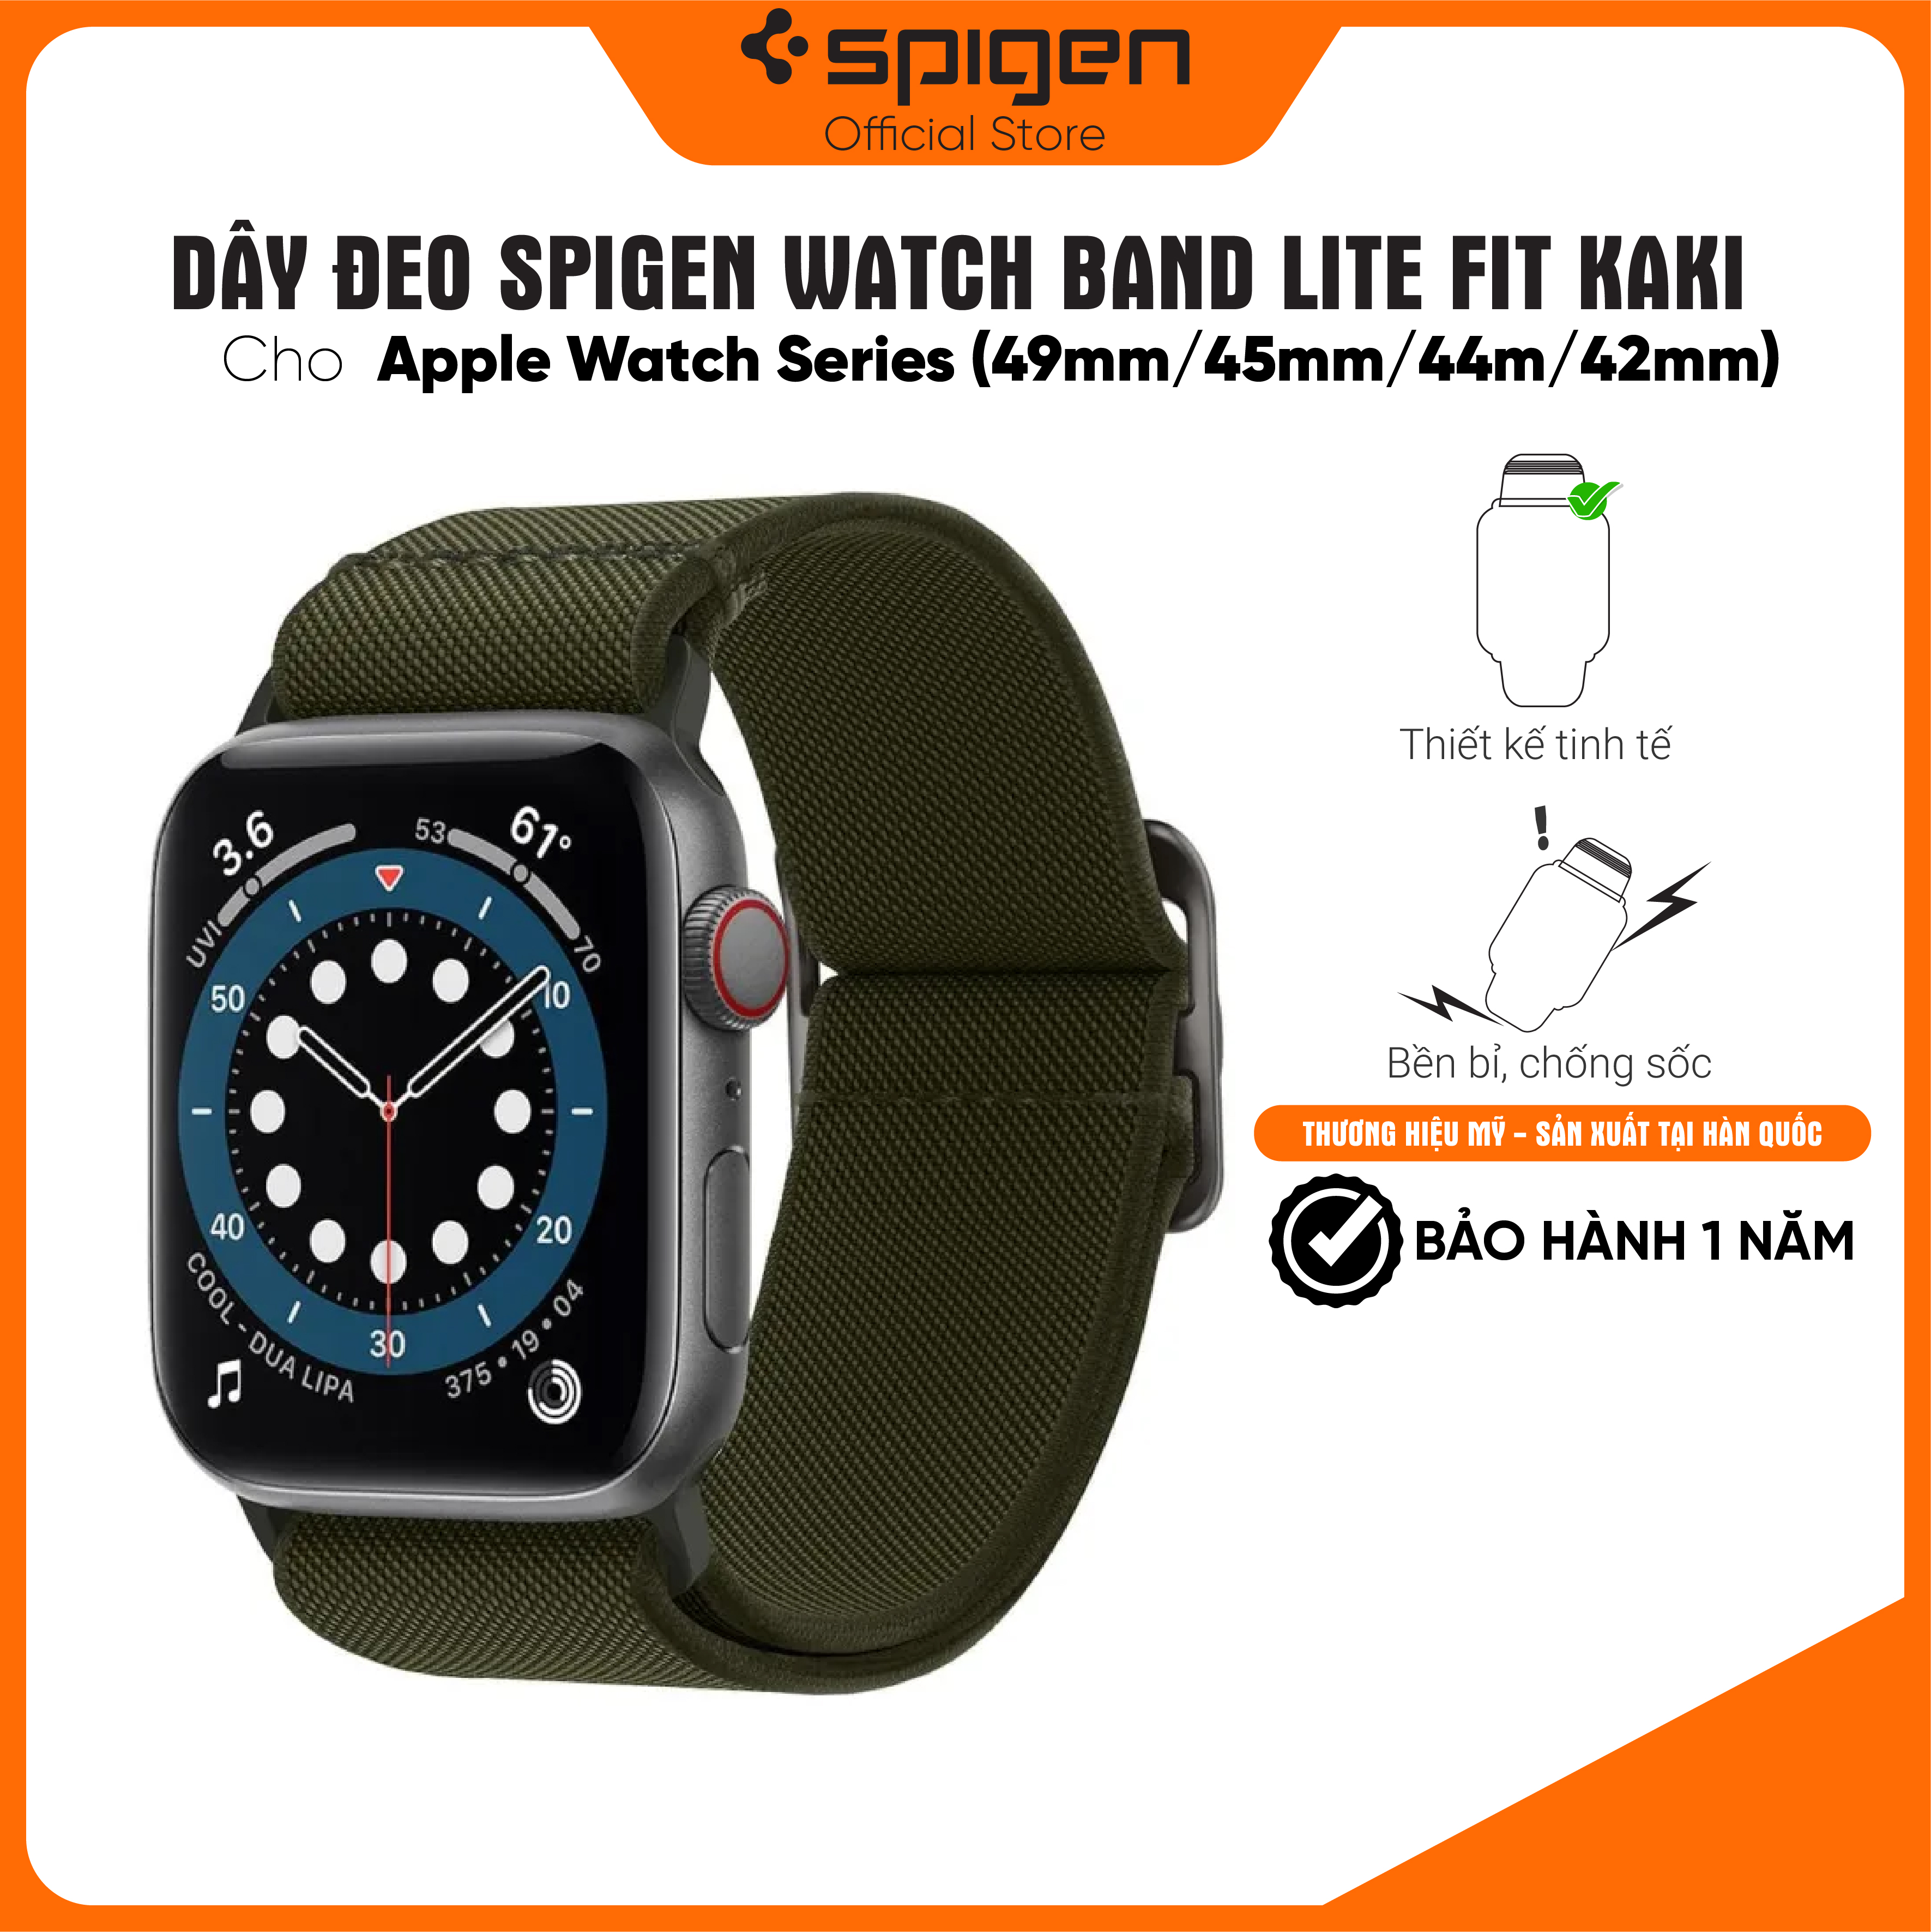 Dây đeo cho Apple Watch Series (49mm/45mm/44m/42mm) Watch Band Lite Fit - Hàng chính hãng